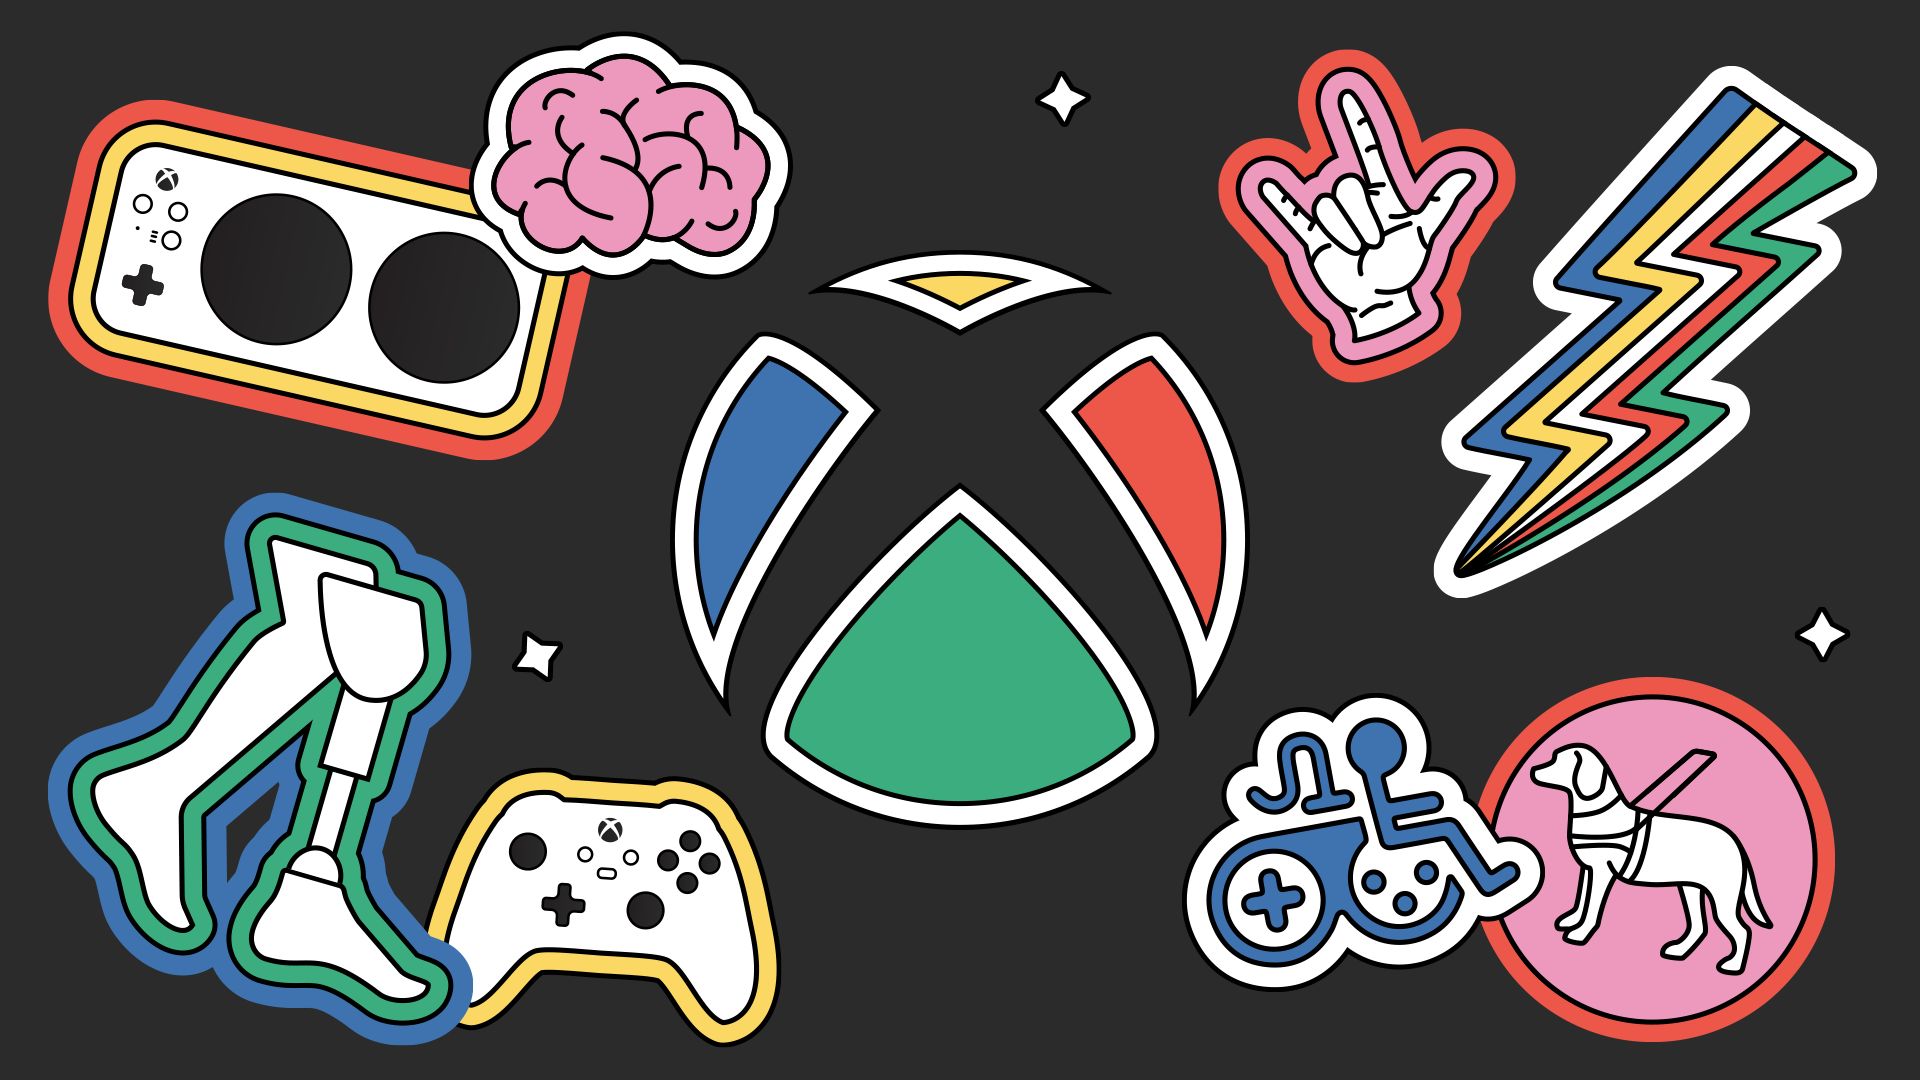 HERO: Das Xbox-Logo befindet sich auf einem schwarzen Hintergrund, der von folgenden Symbolen umgeben ist: dem Xbox Adaptive Controller, einem Gehirn, dem amerikanischen Gebärdensprachzeichen für "Ich liebe dich", einem mehrfarbigen Blitz, einem Rollstuhl, einem Blindenhund, einer Beinprothese und dem Original Xbox Controller.